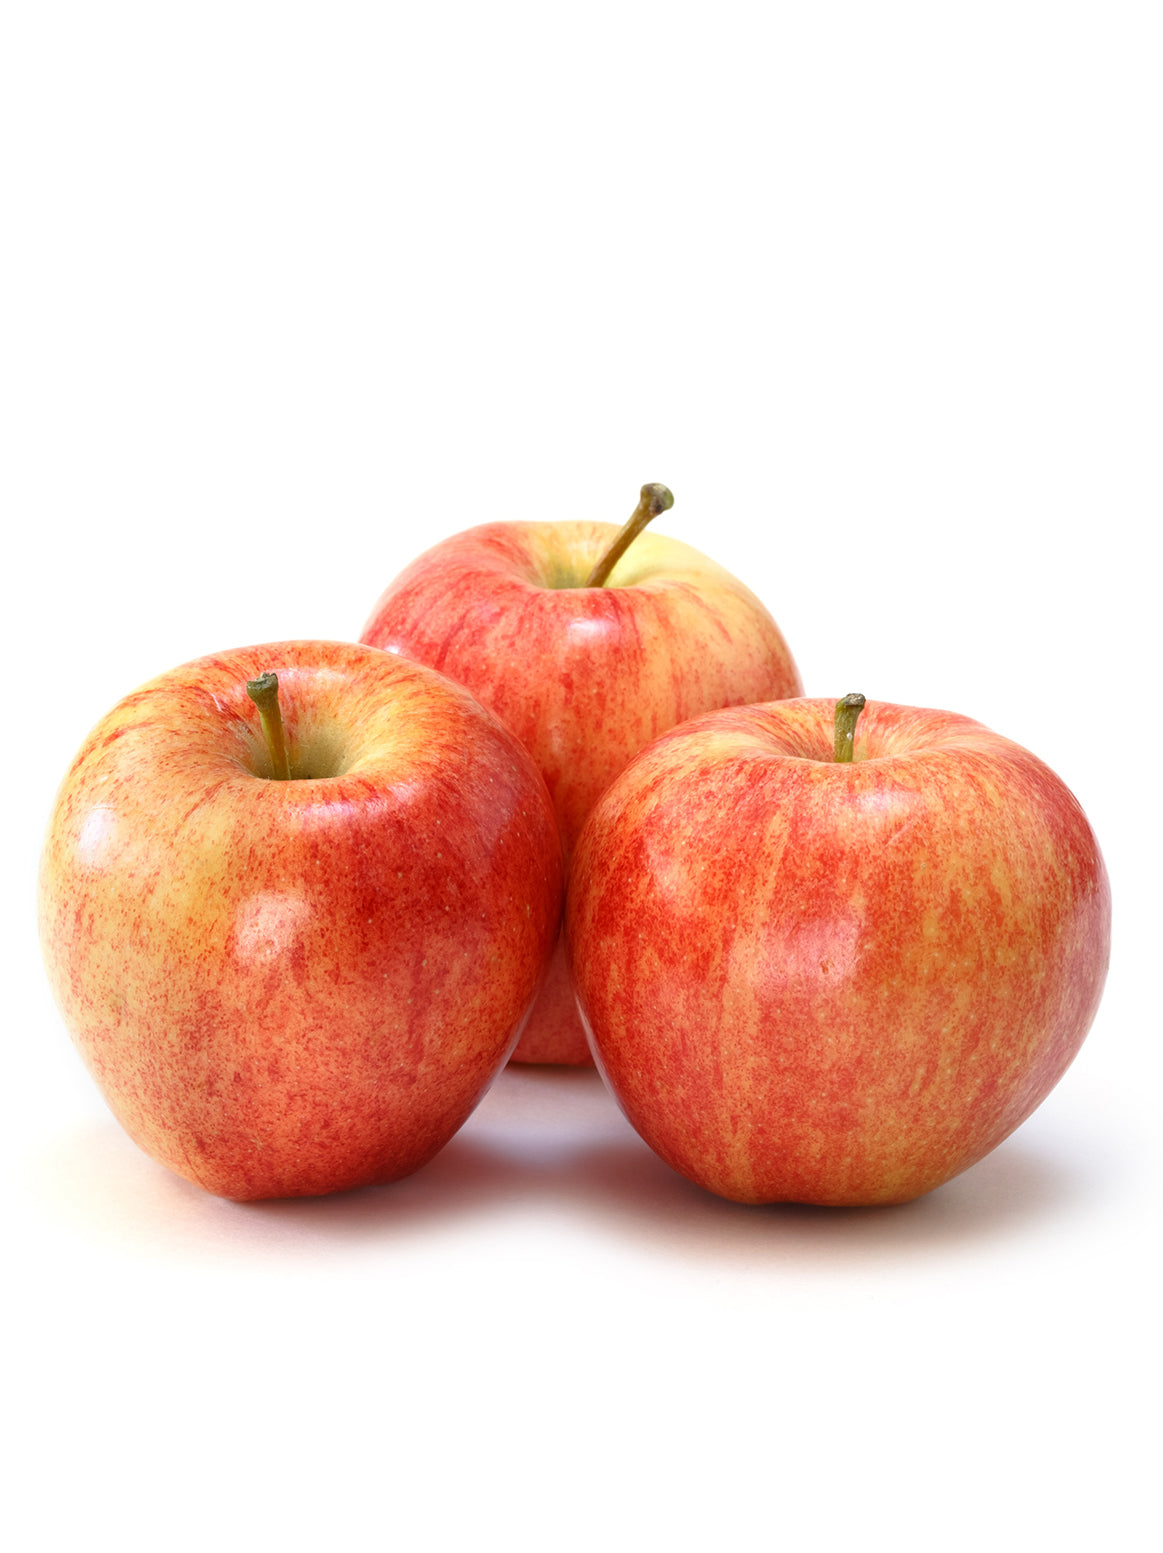 Apple/Gala - 3 piece – Choco4NYC - Krystal Fruit & Vegetables